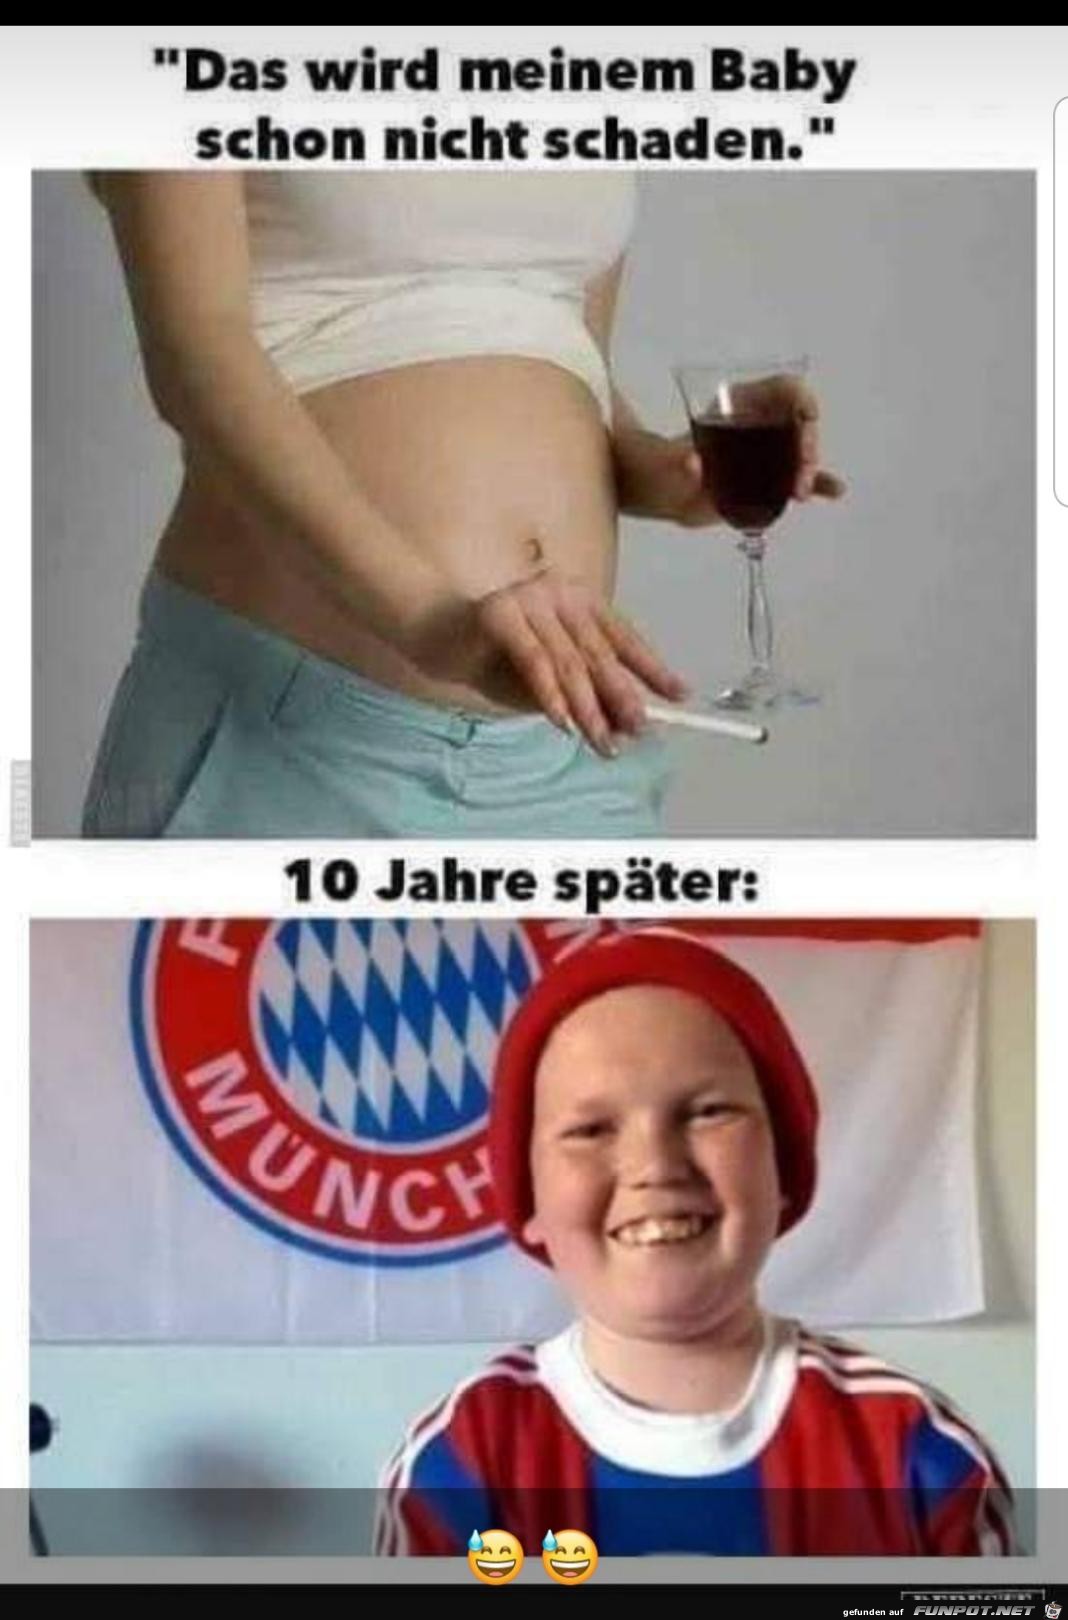 Bayern fan